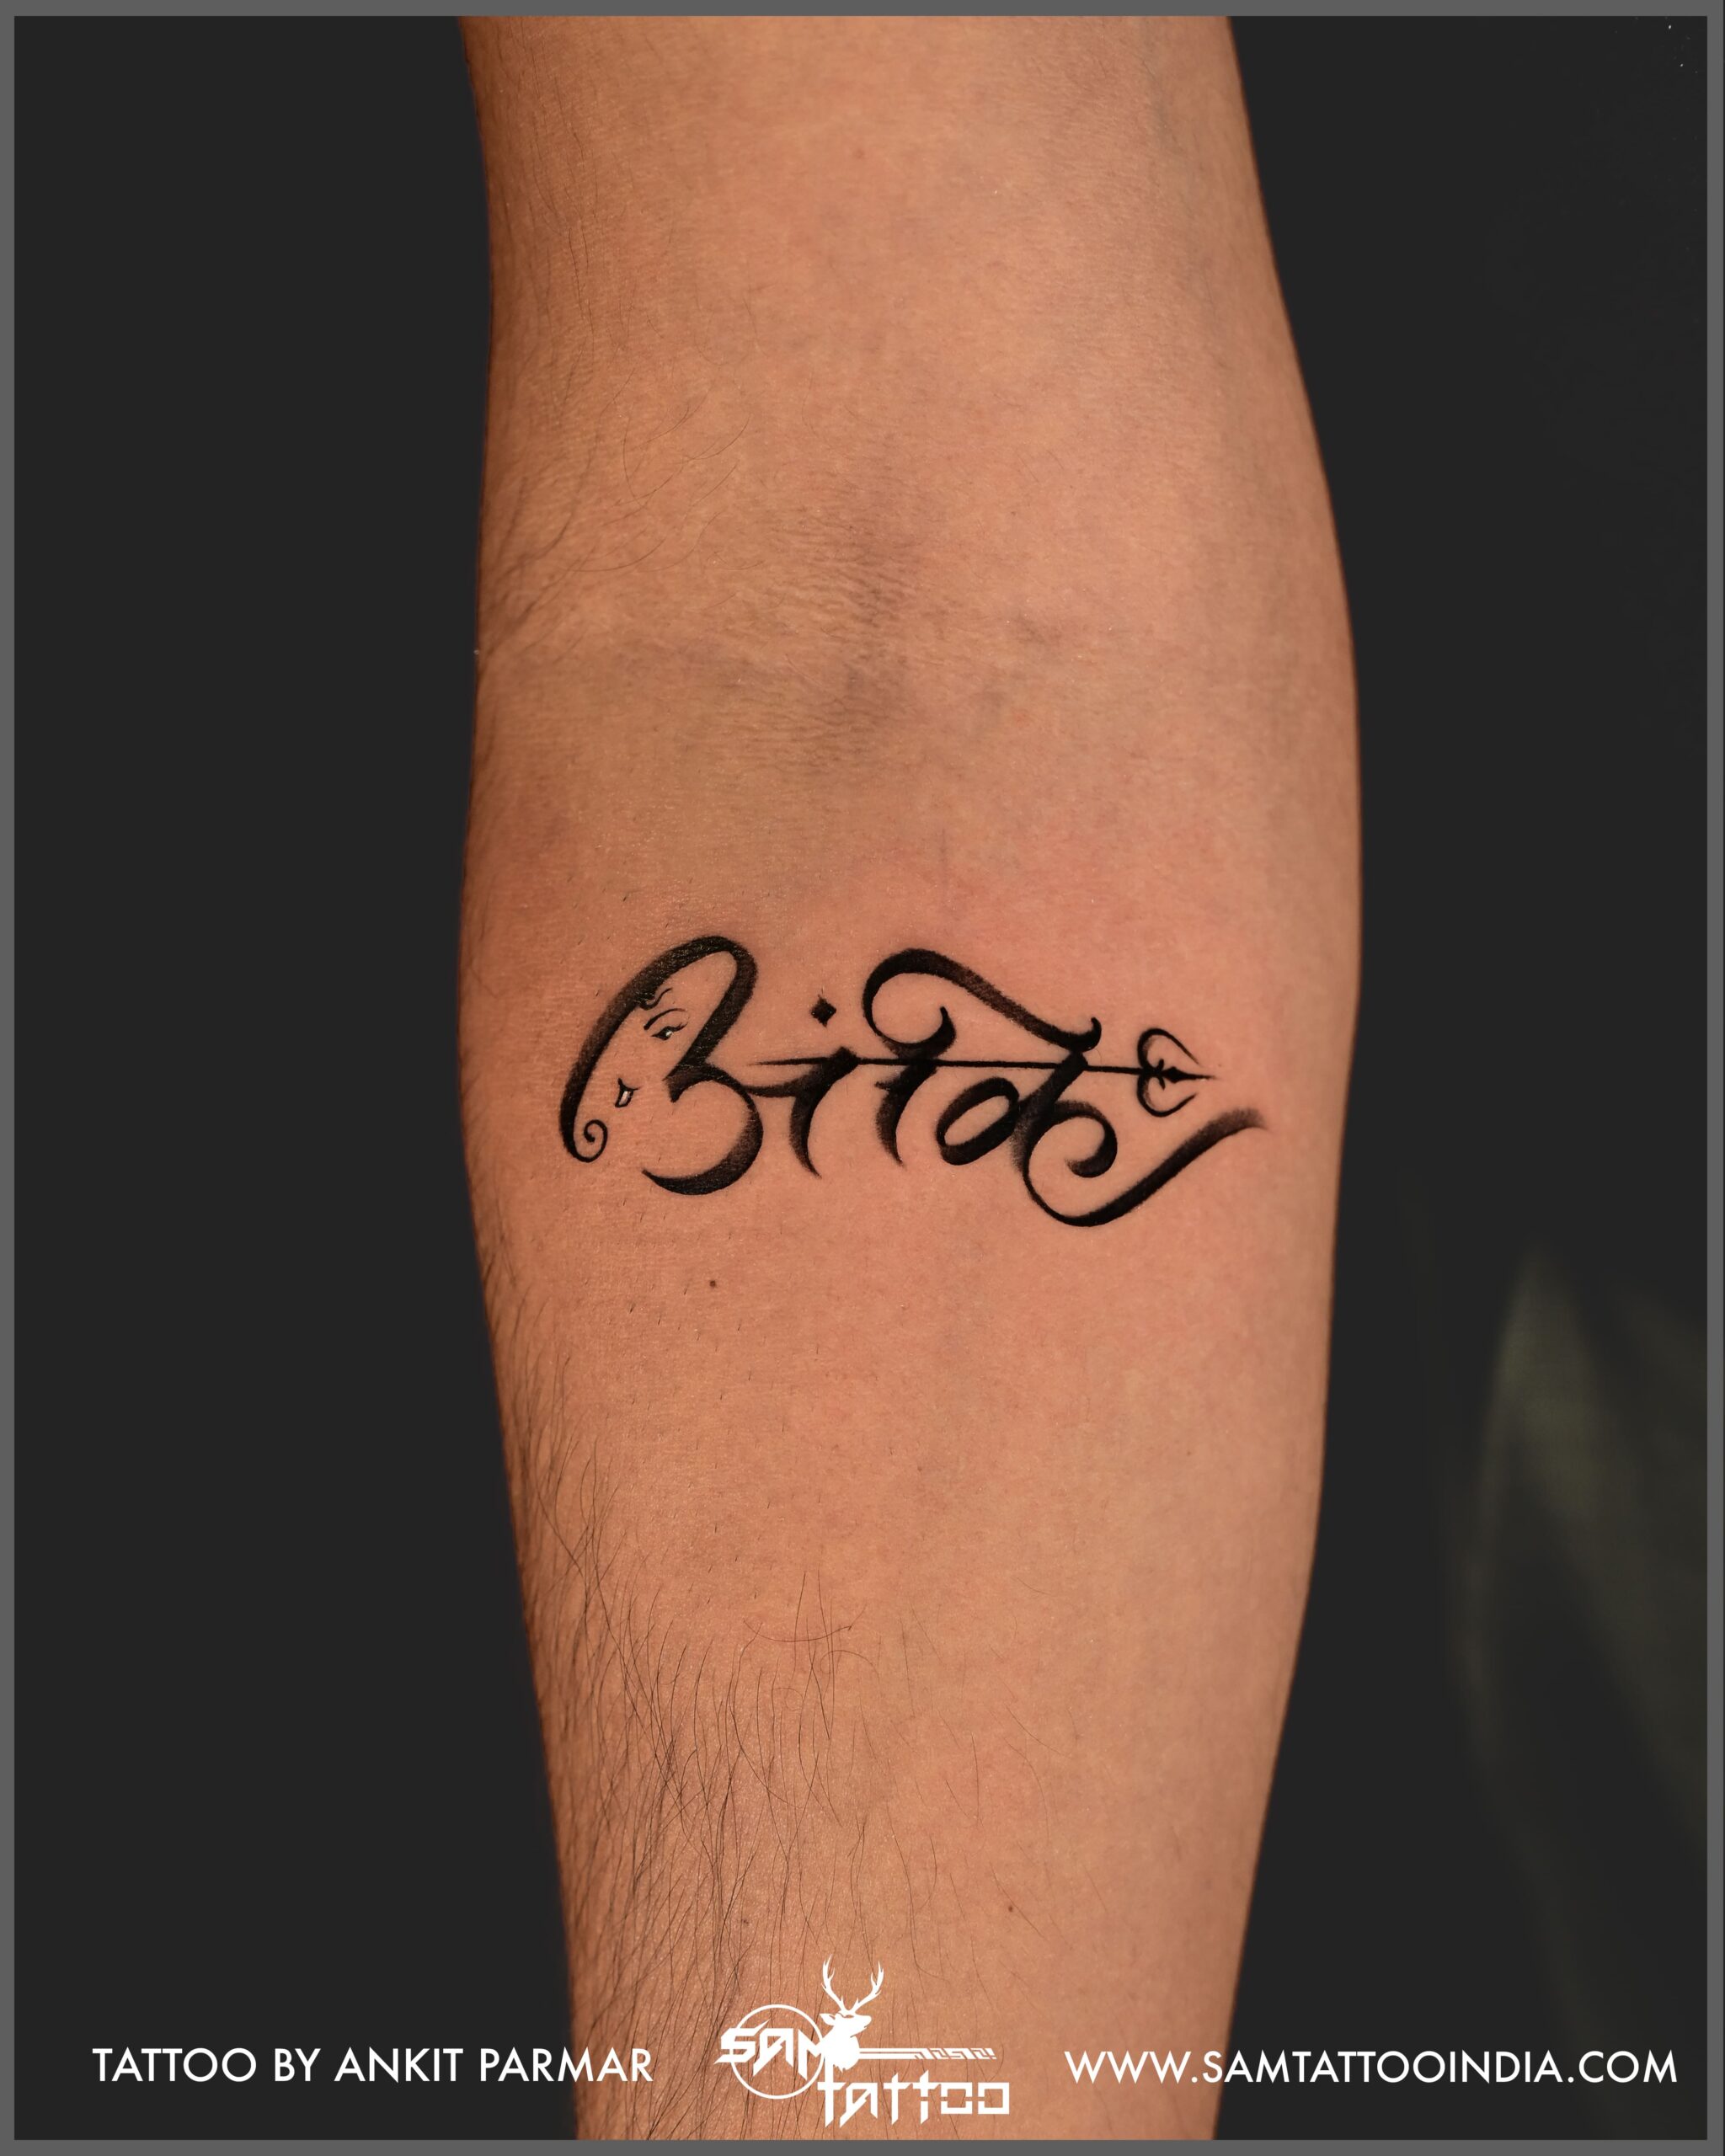 Ankit Gosar - Tattoo Artist - Freelance | LinkedIn